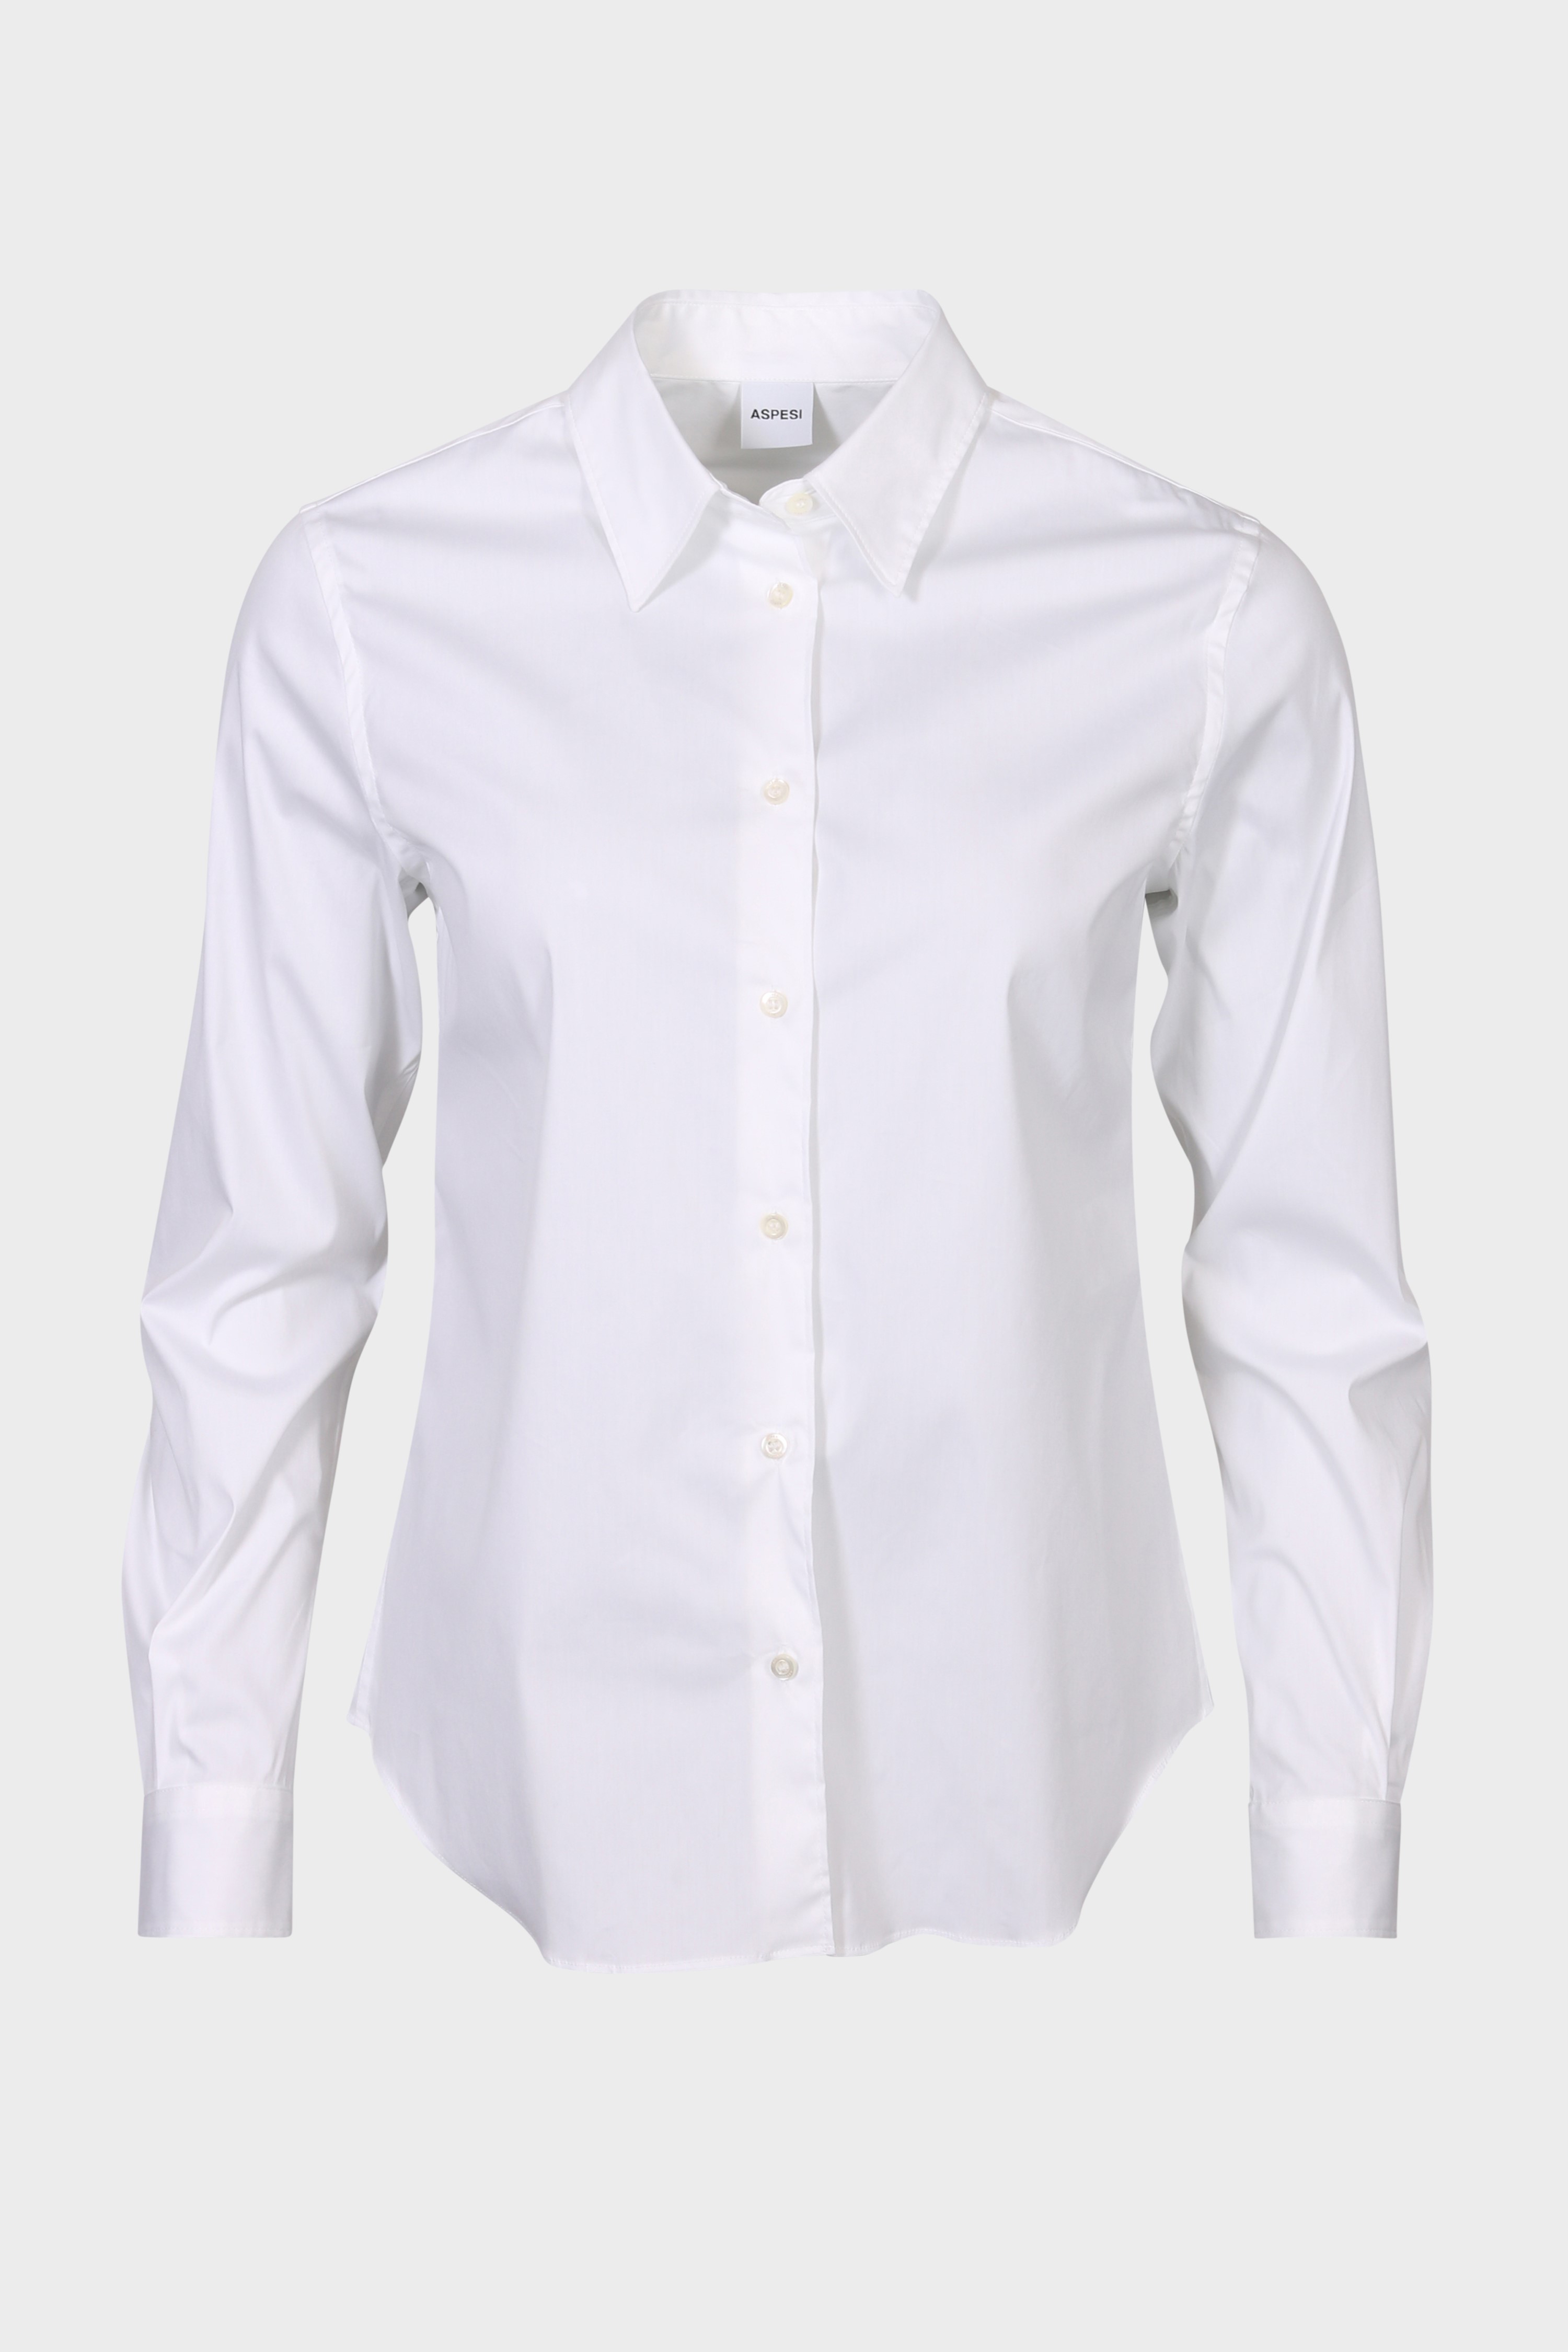 ASPESI White Shirt IT42 / DE36